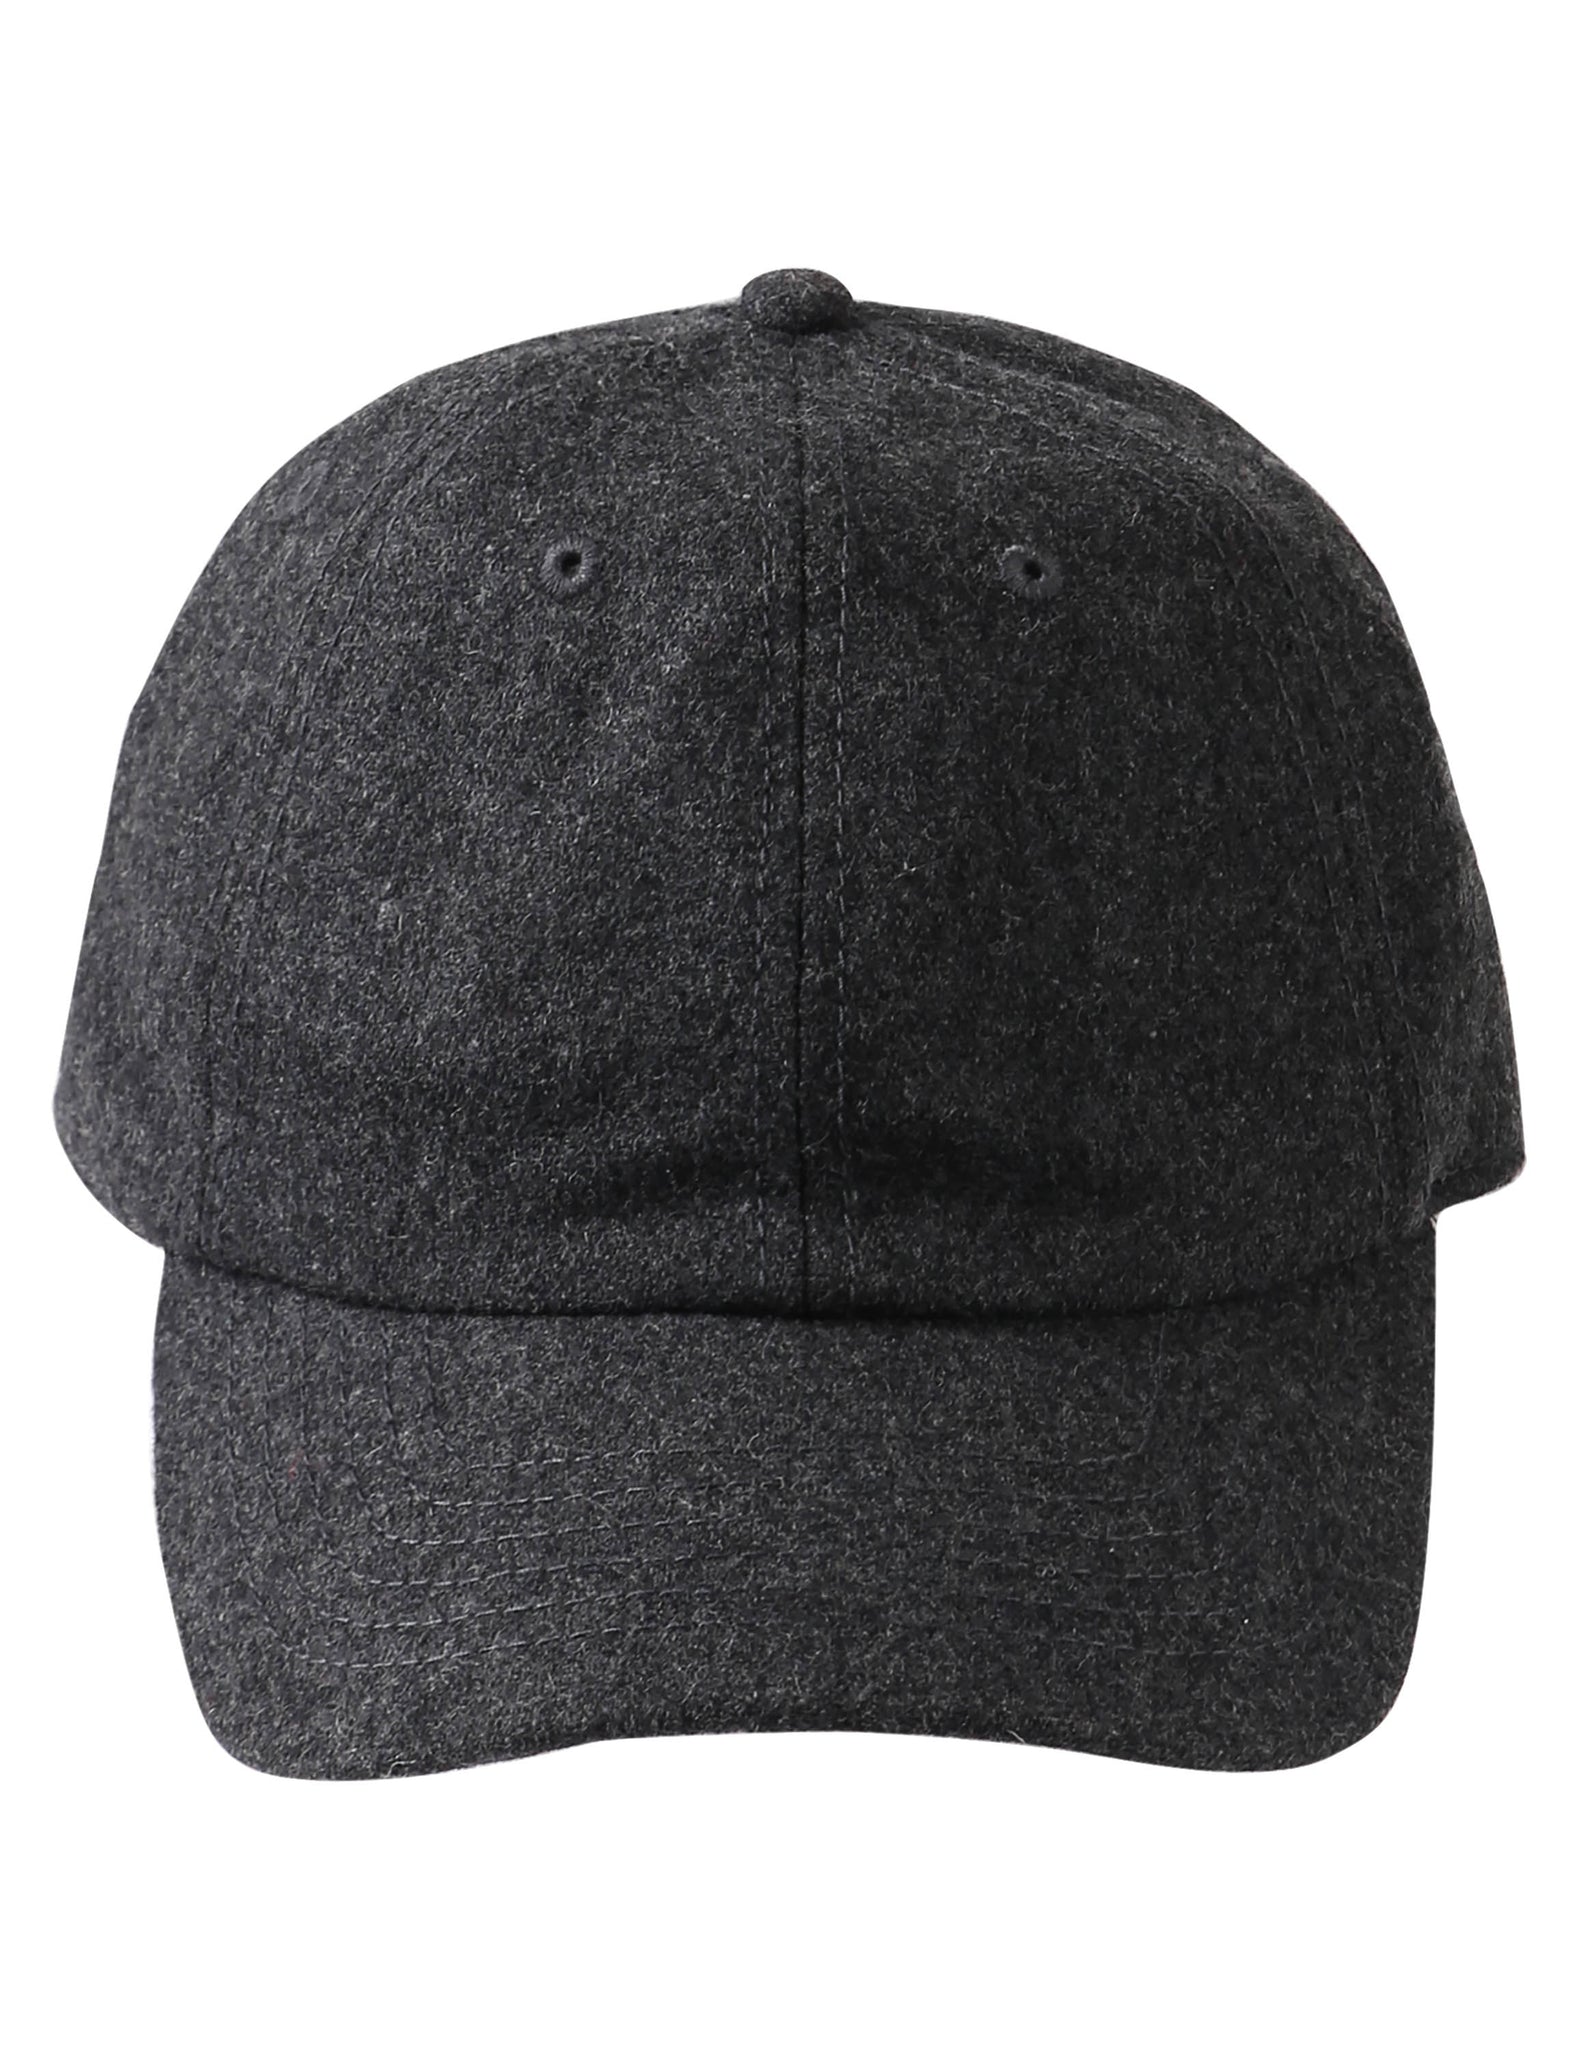 woolen cap_wool cap_woolen cap for men_dad cap_custom dad hats_cool dad hats_cheap dad hats_caps dad_Gray